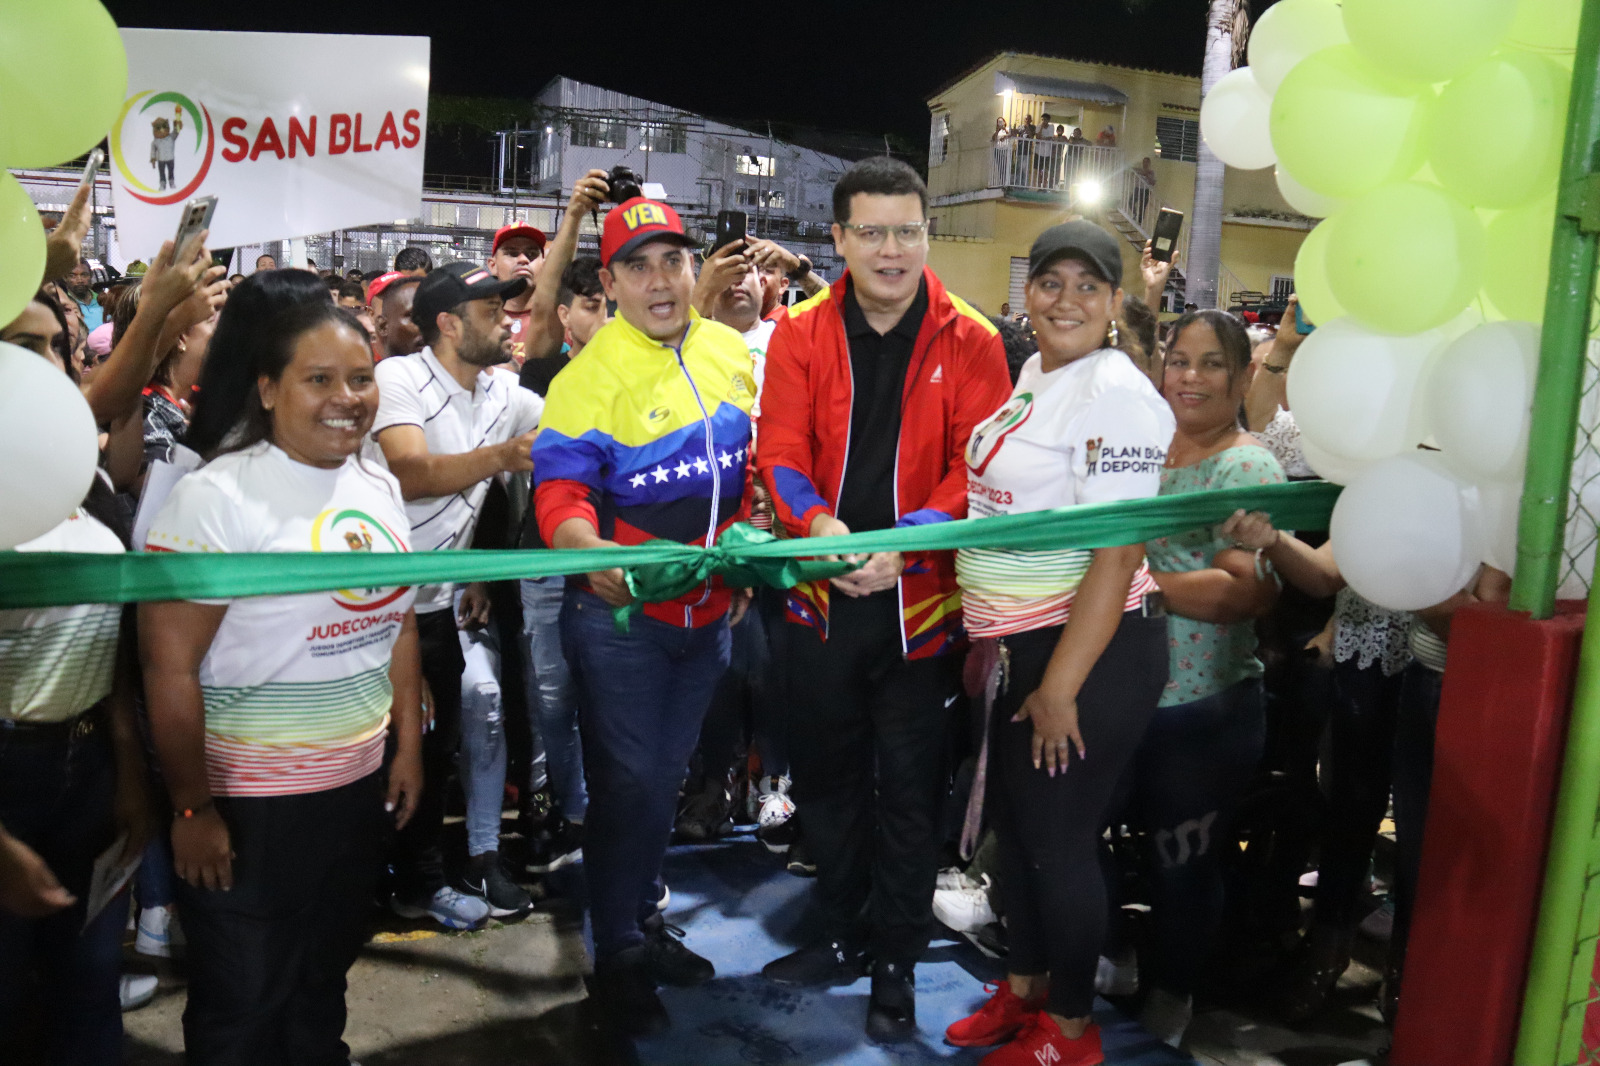 el alcalde Julio Fuenmayor, reinauguró dos canchas deportivas en compañía de la comunidad de La Michelena